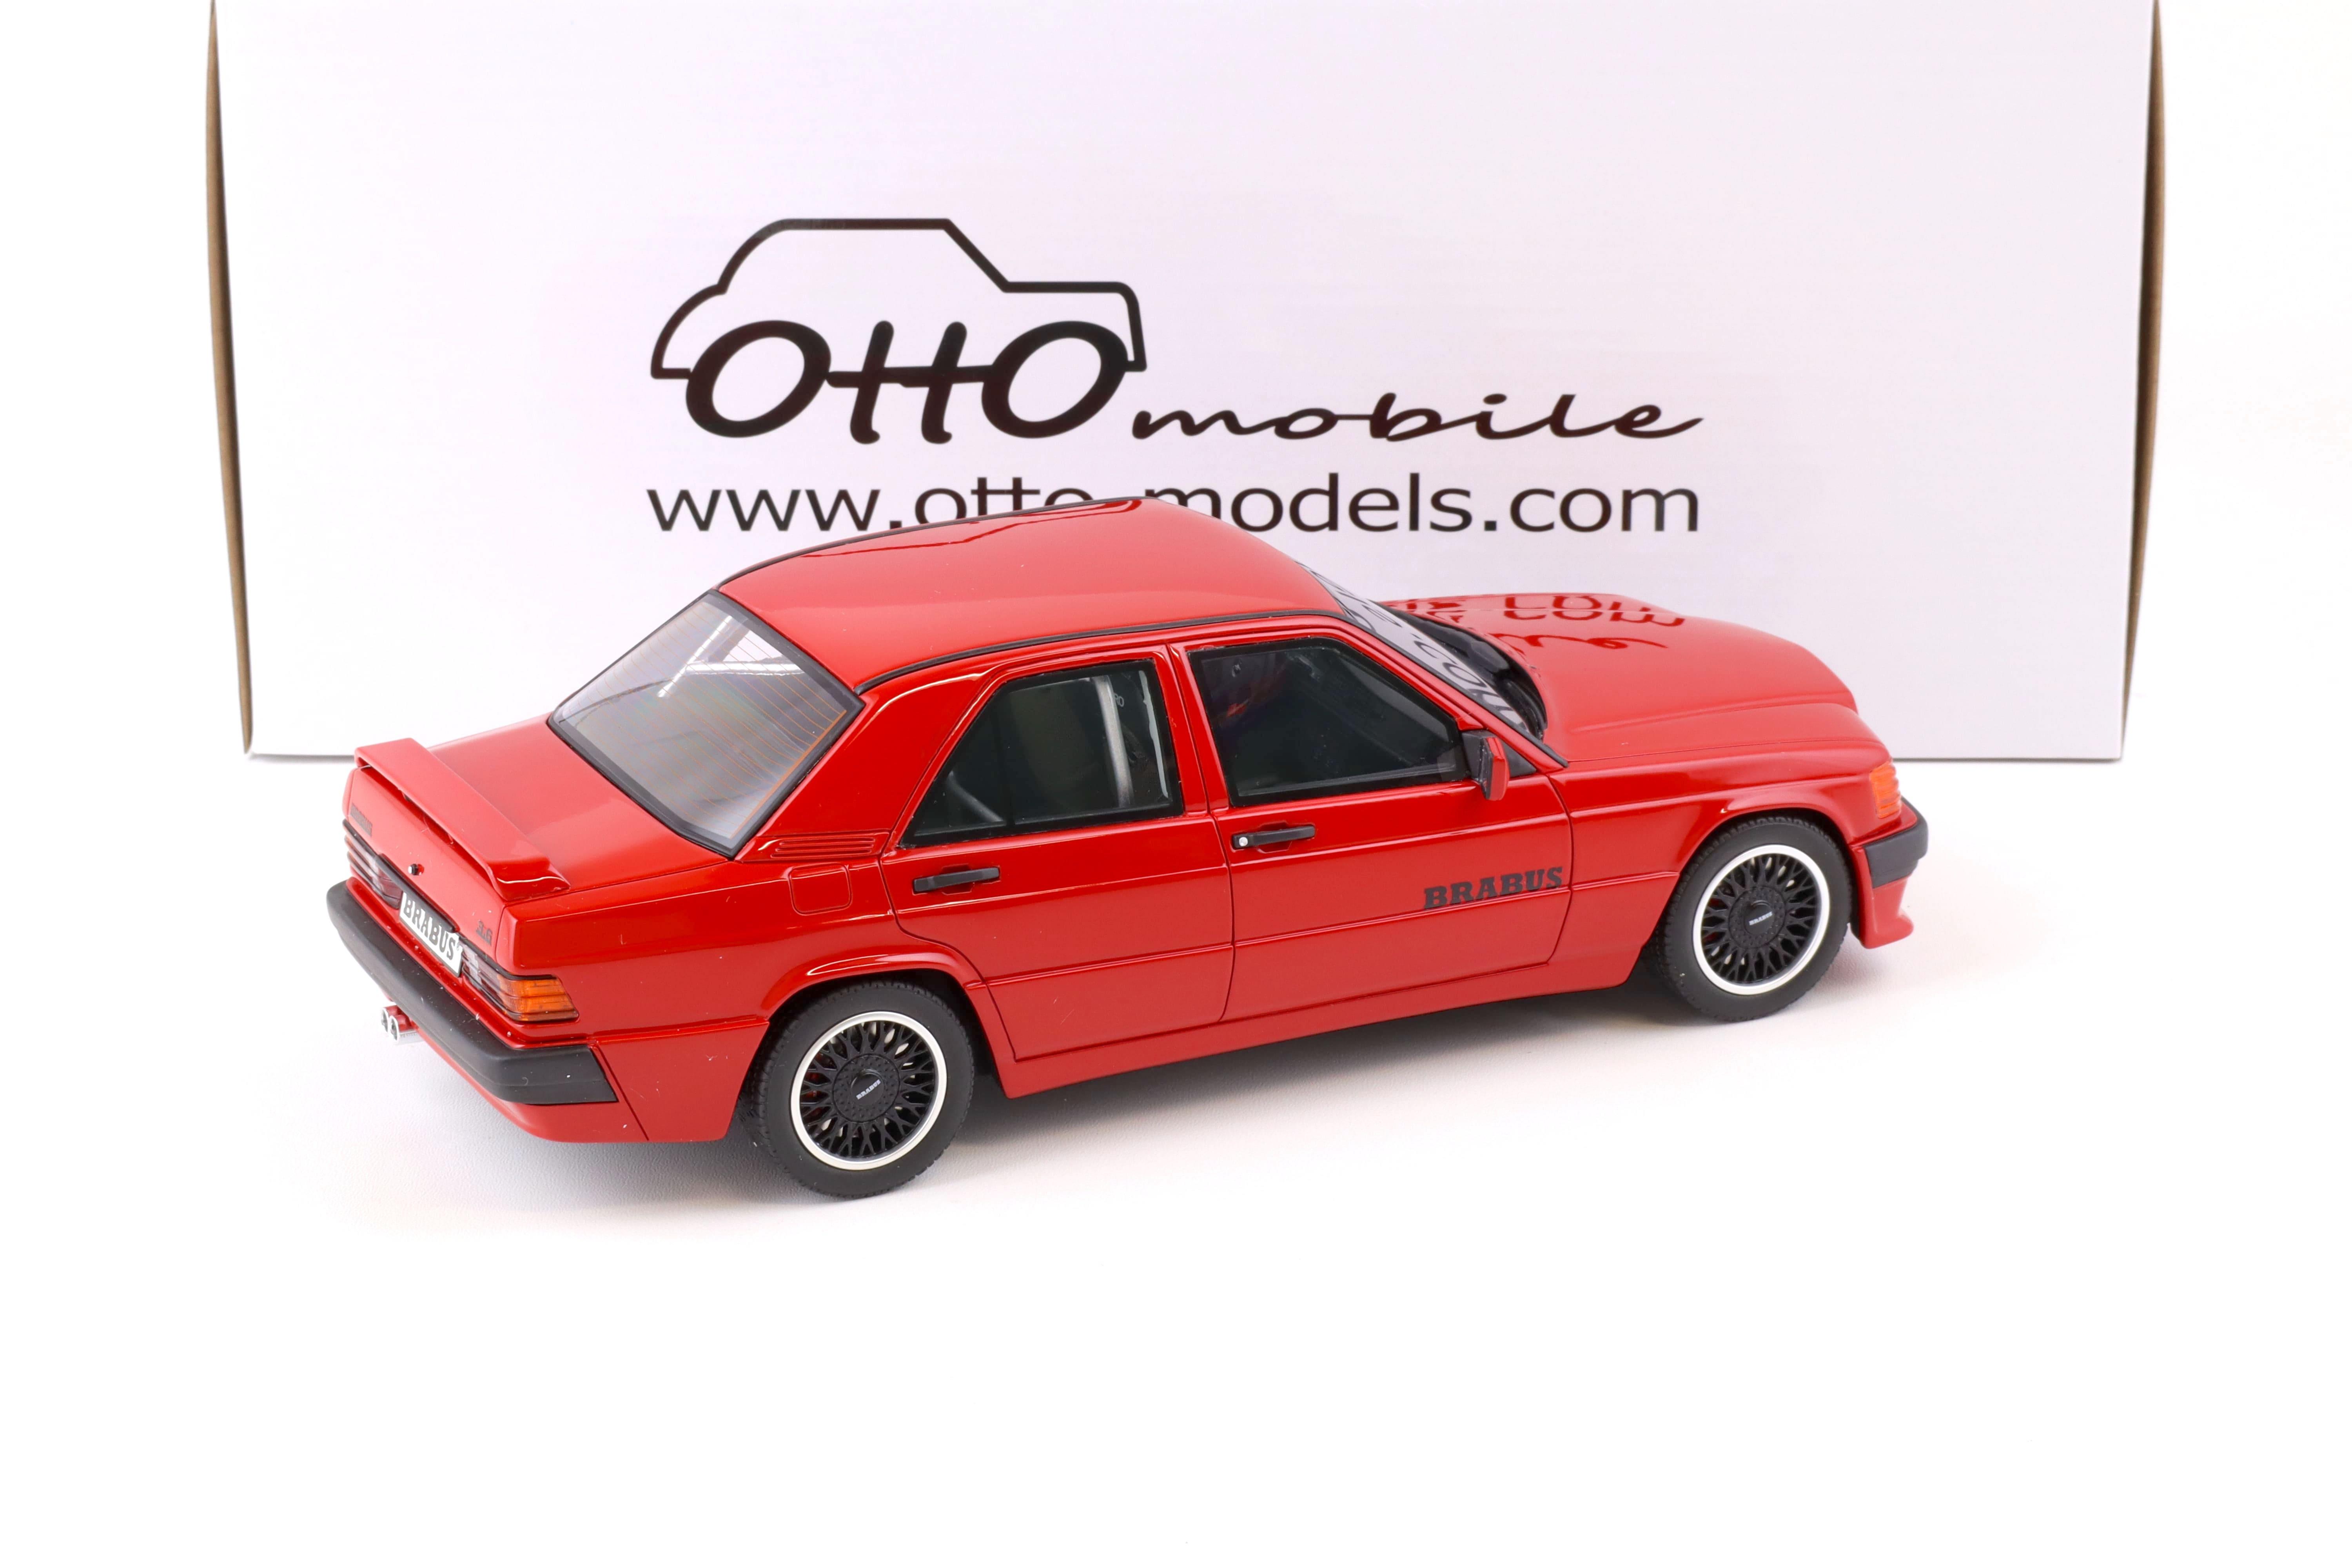 1:18 OTTO mobile OT674 Brabus Mercedes 190E 3.6S W201 red 1989